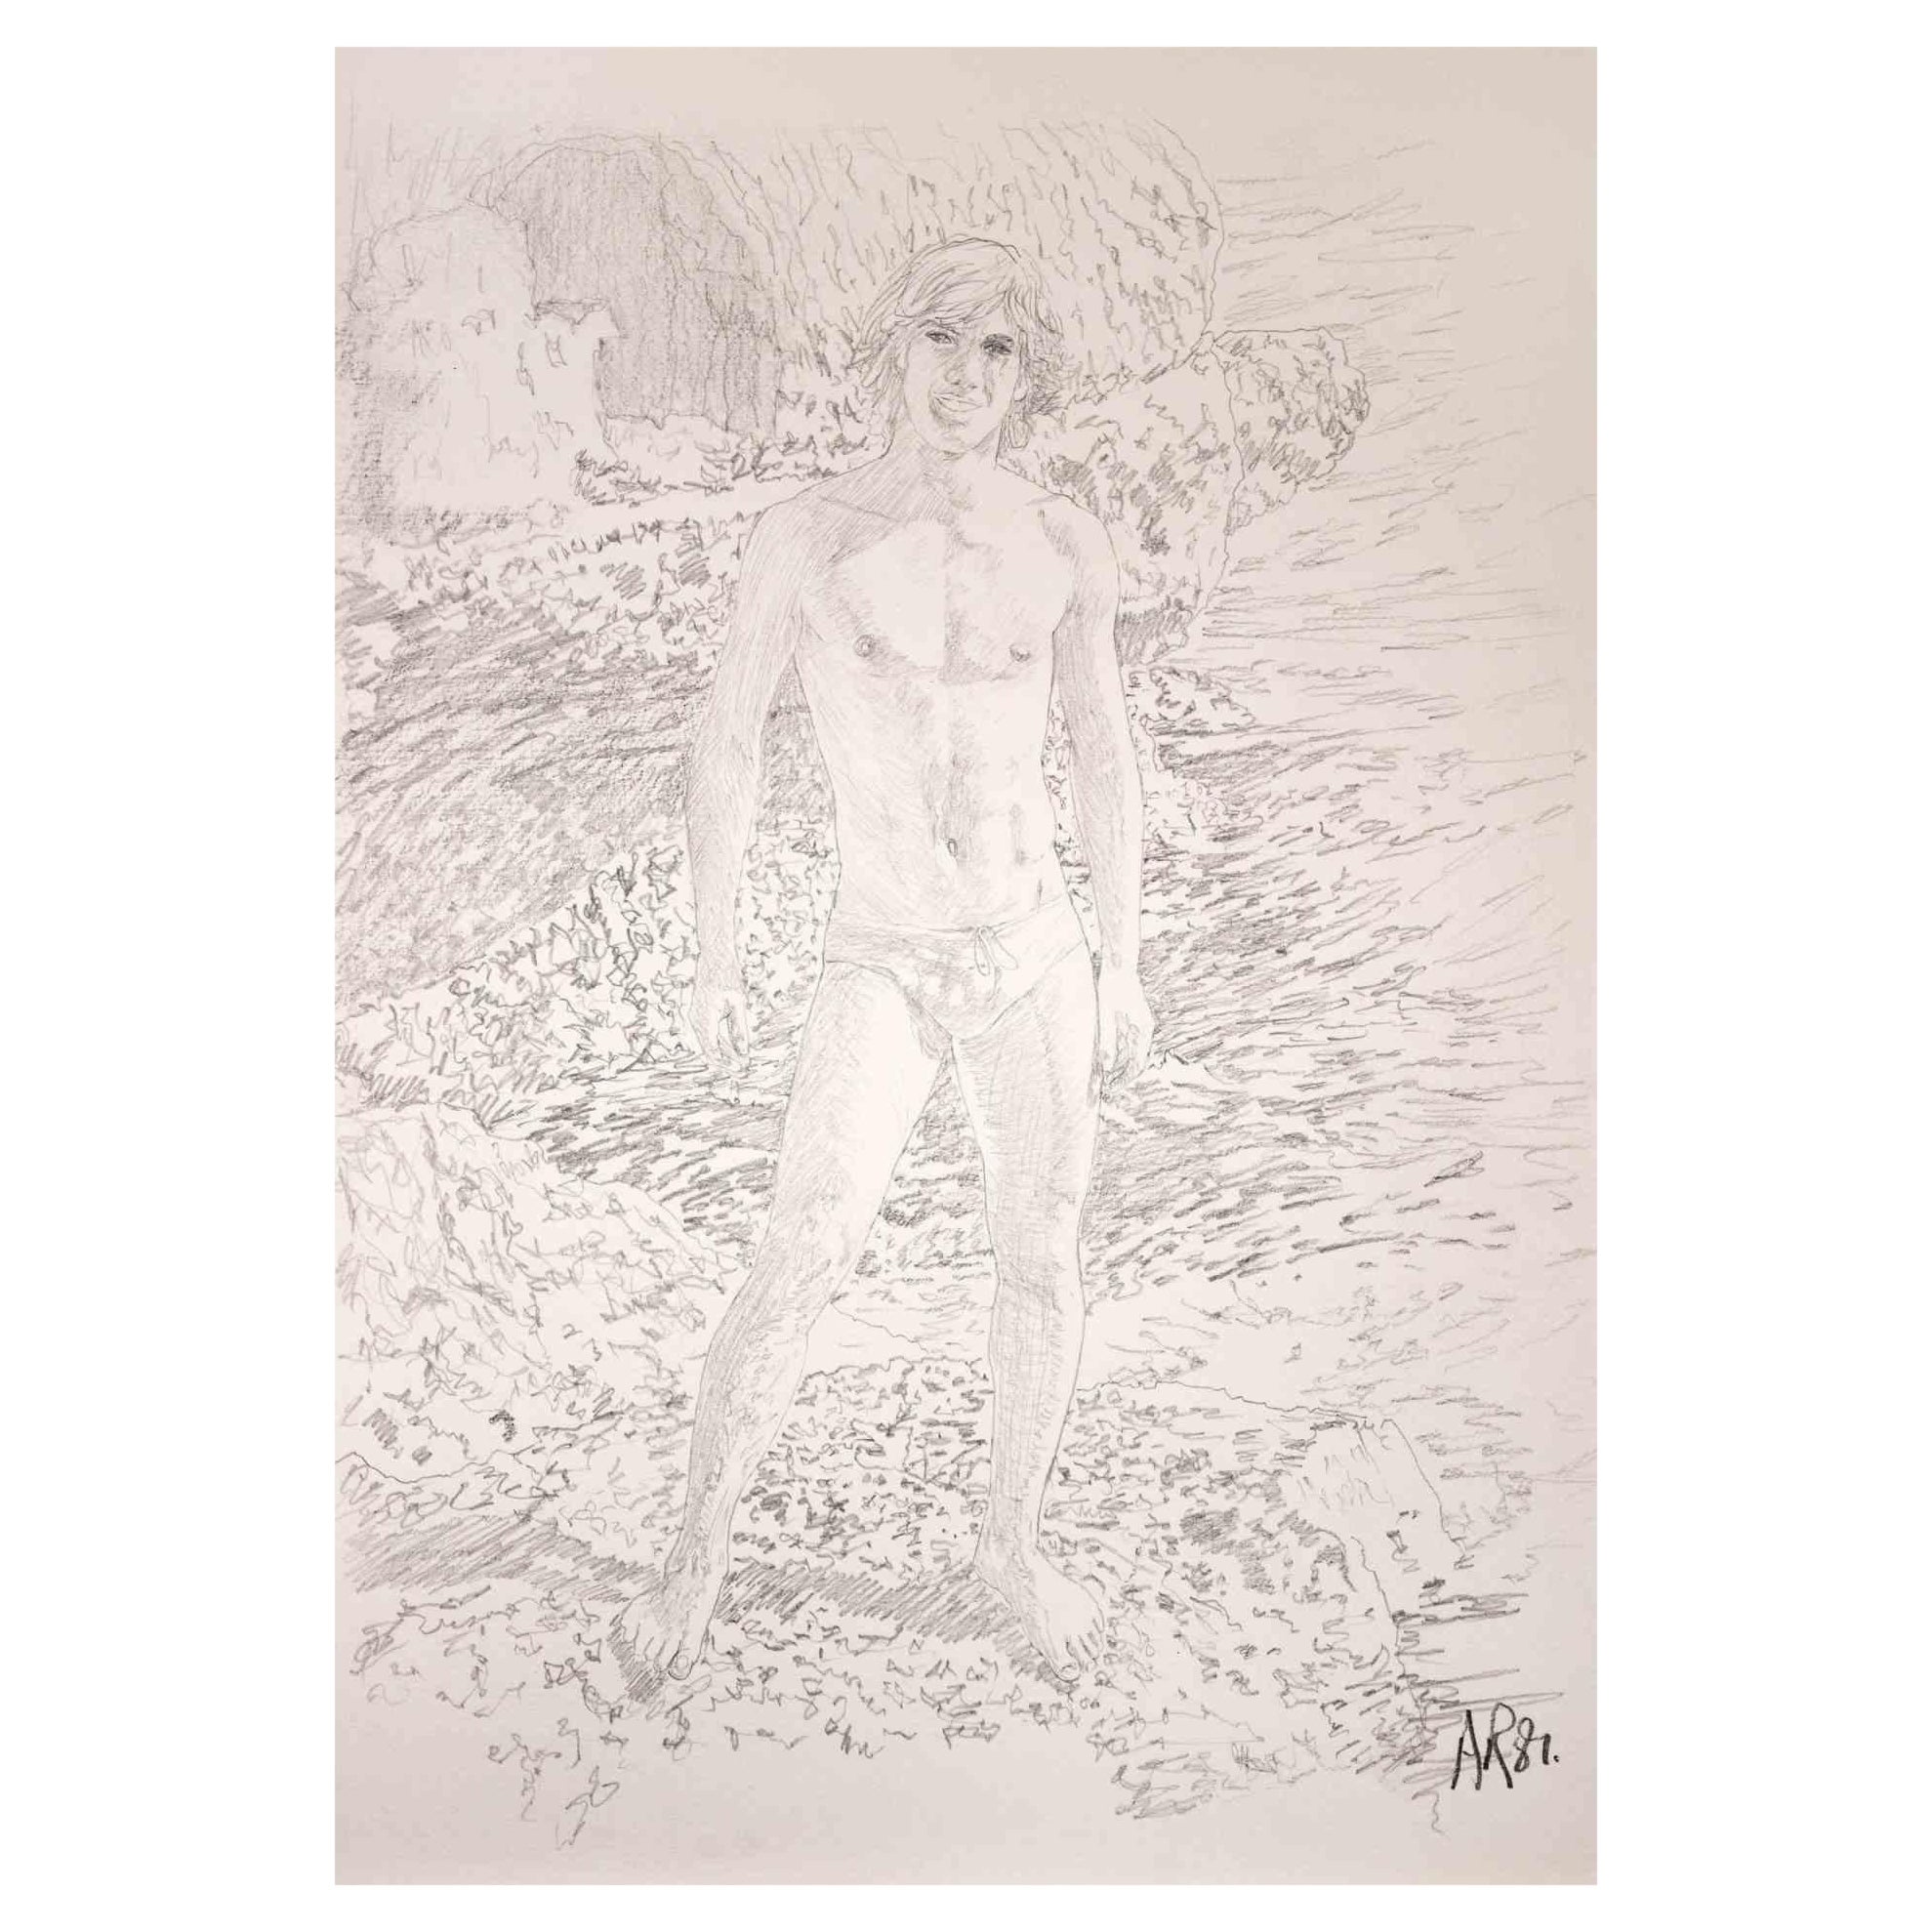 Junge auf einer Klippe  ist eine Originalzeichnung mit Bleistift von Anthony Roaland aus dem Jahr 1981. Handsigniert und datiert vom Künstler am unteren rechten Rand. 

Im Vordergrund ist die Figur in einem zarten Stil dargestellt. Im Hintergrund